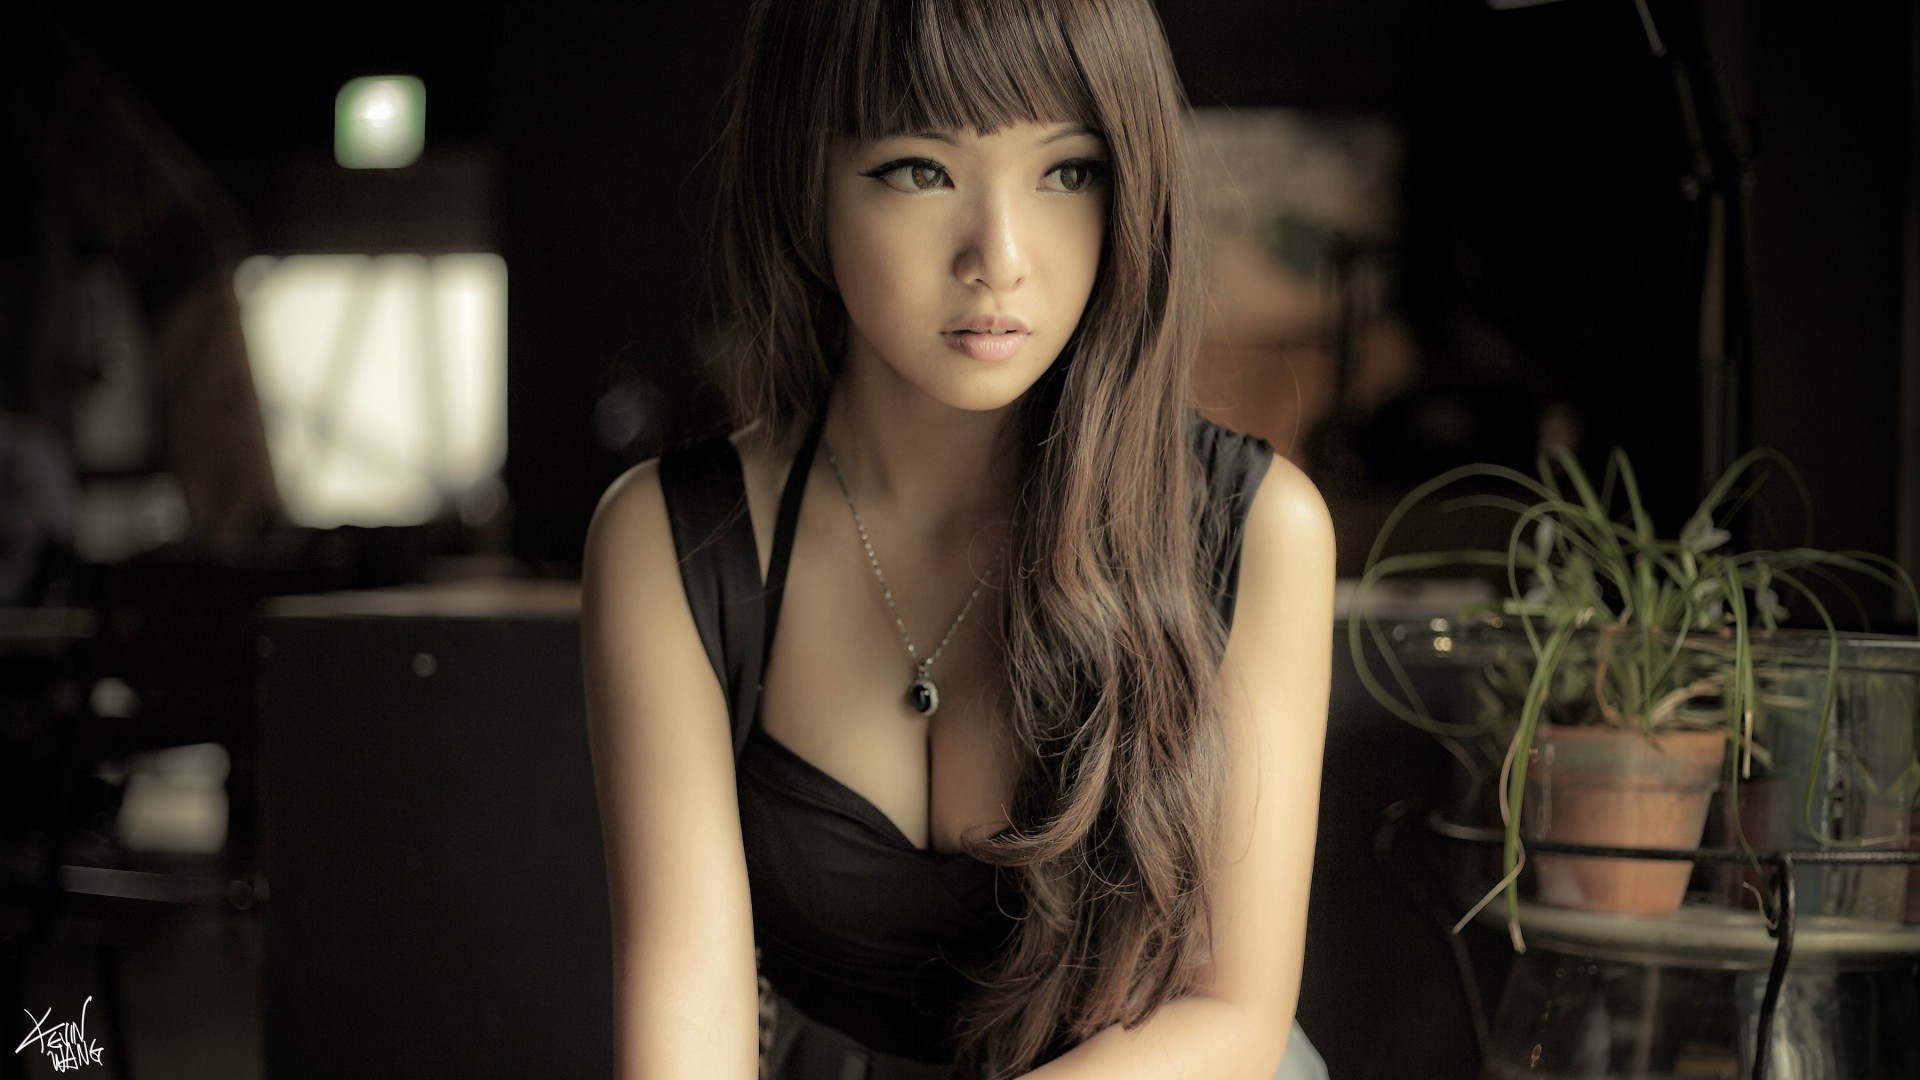 Your asia. Азиан герлз. Азиатские девушки. Красивые азиатки. Красивые японки.